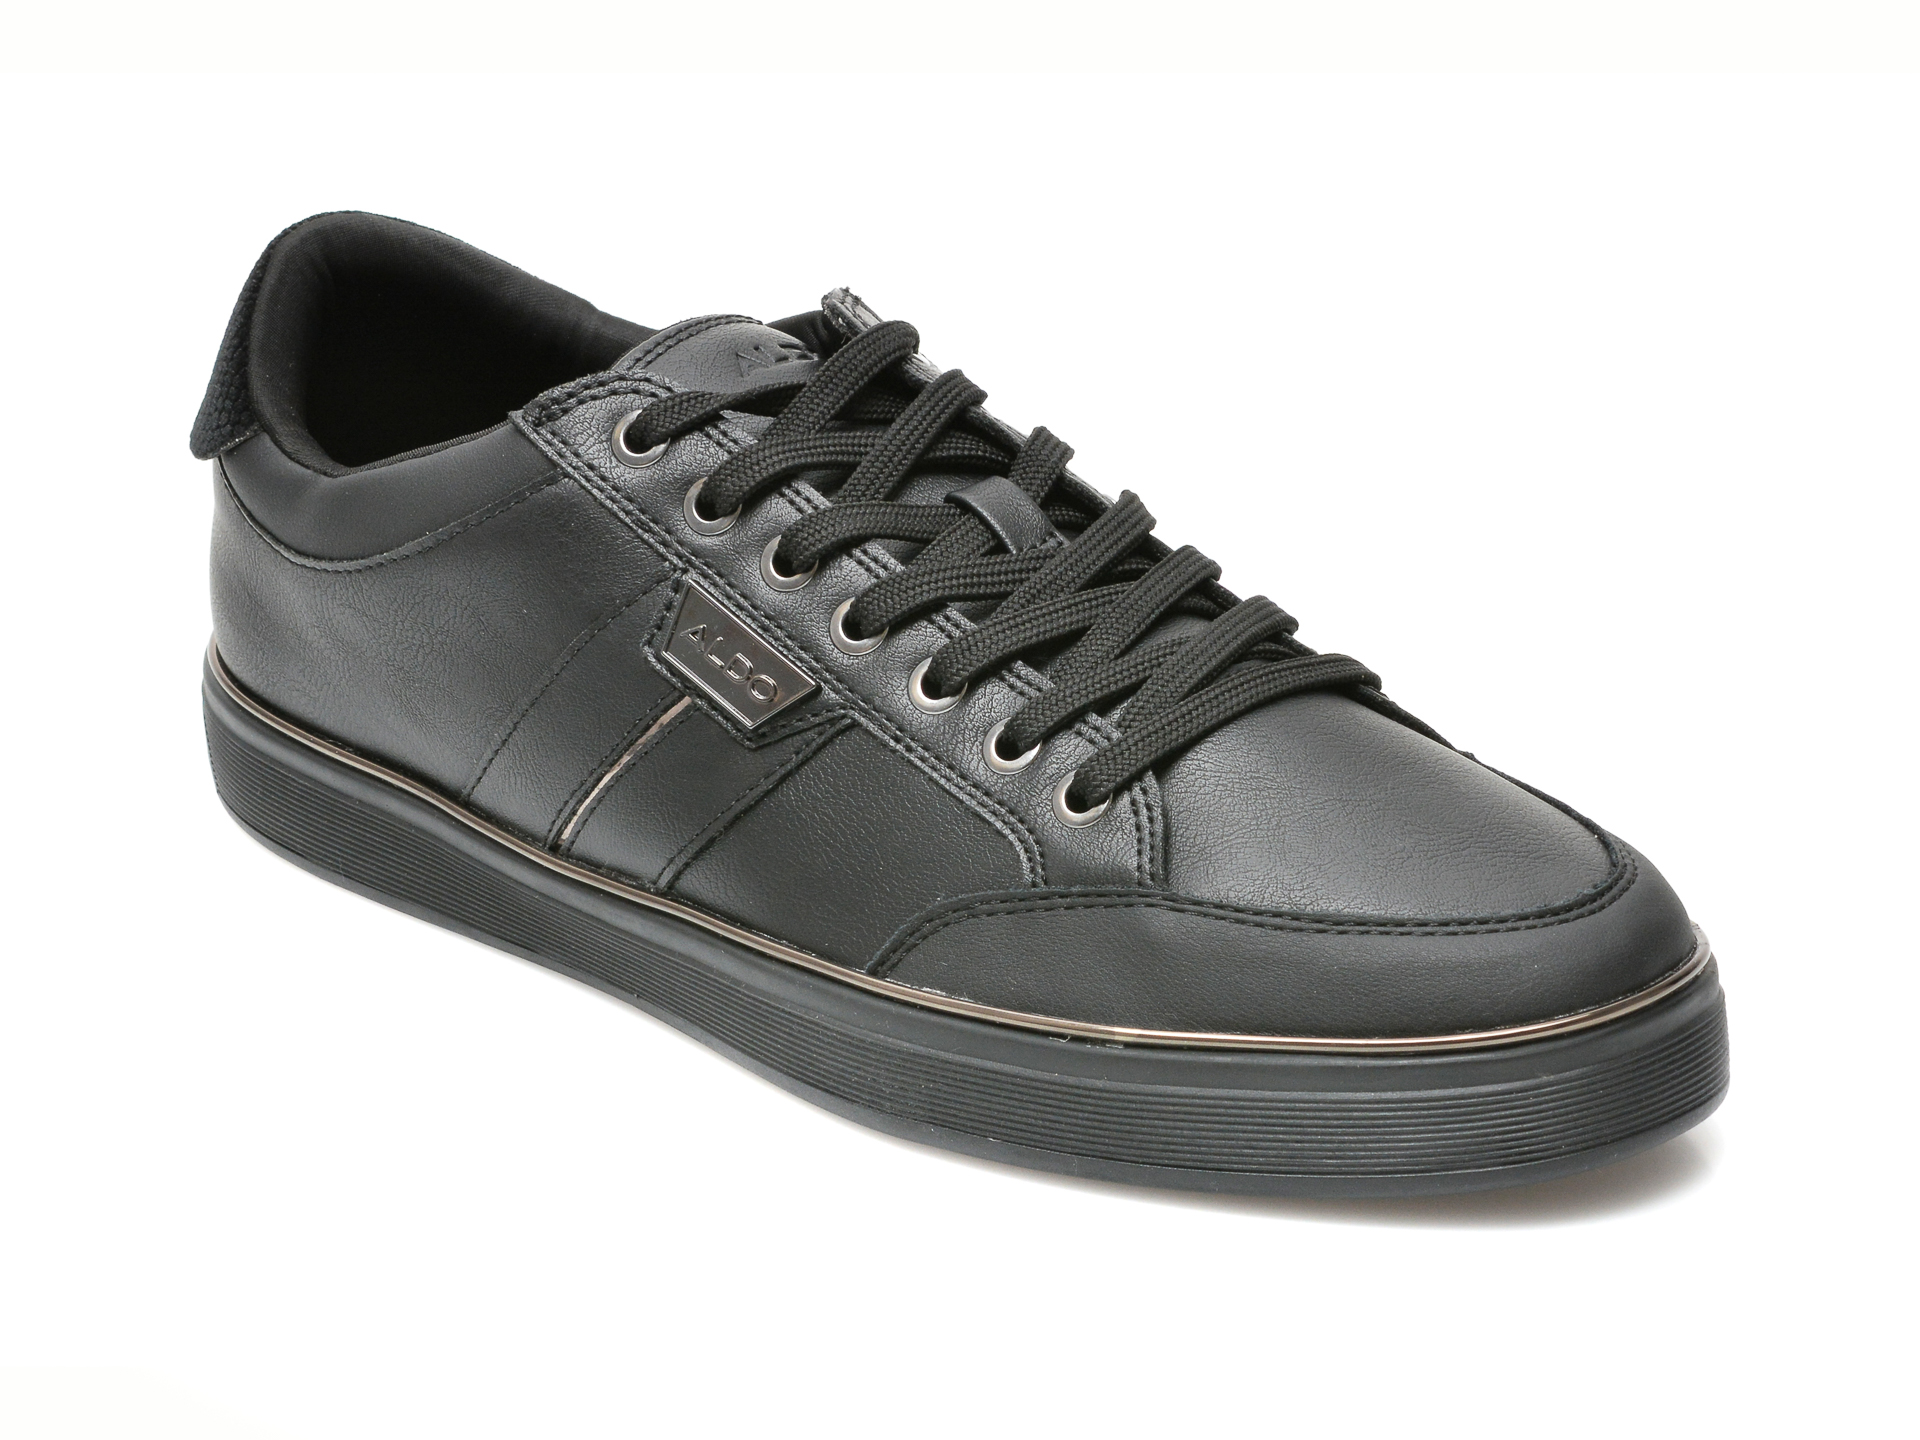 Pantofi ALDO negri, MEMBAR001, din piele ecologica Aldo imagine reduceri